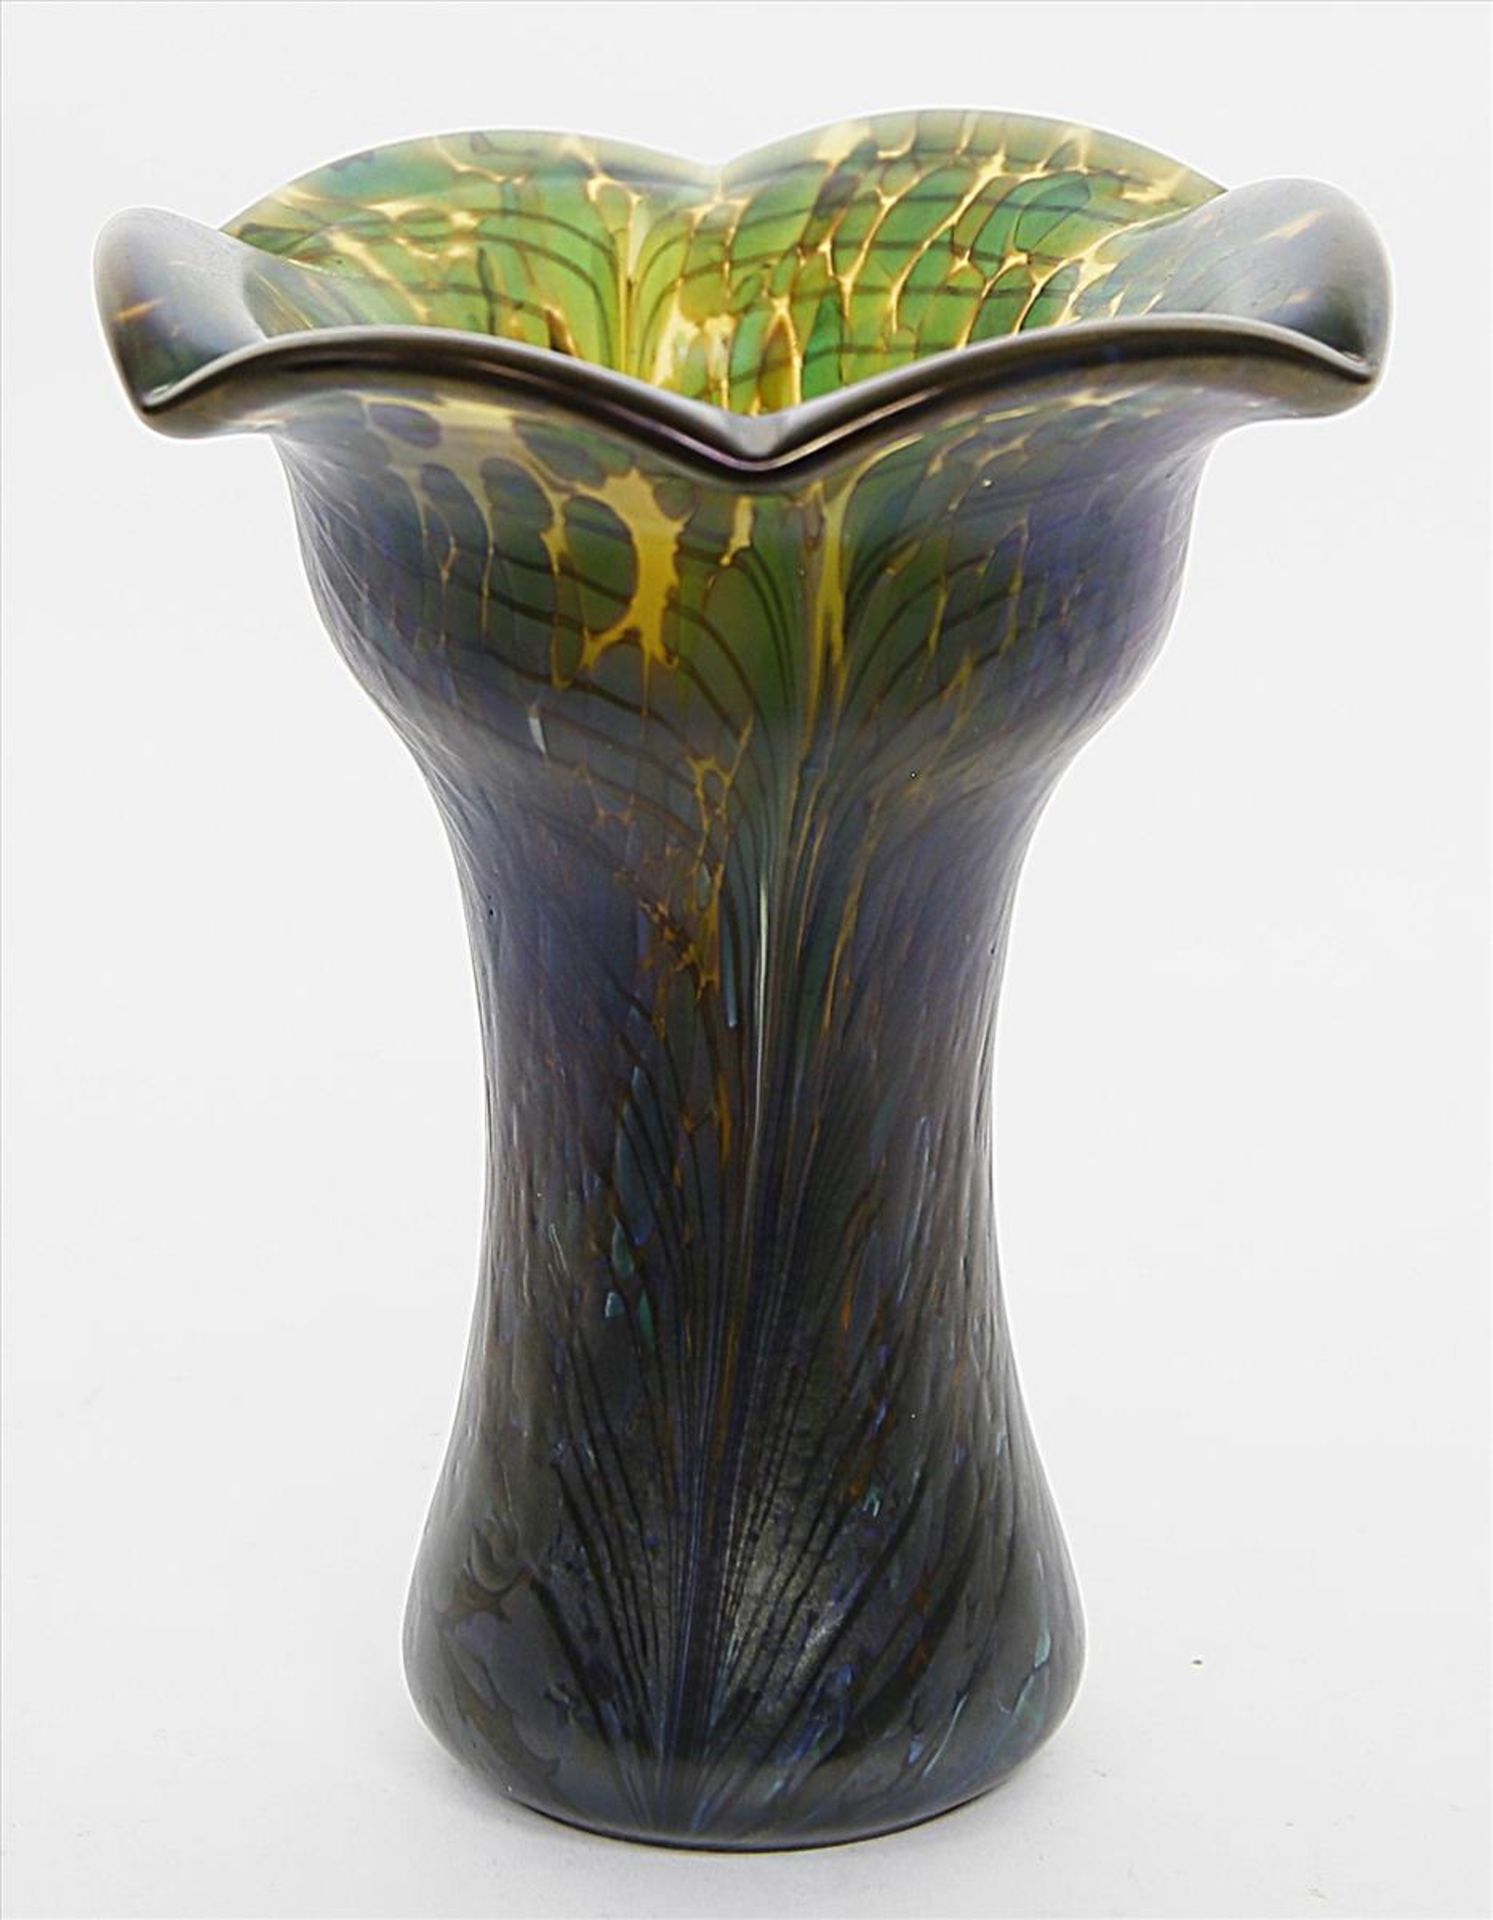 Vase.Bernsteinfarbenes, dickwandiges Glas mit grünen Einschmelzungen und federartig irisierender